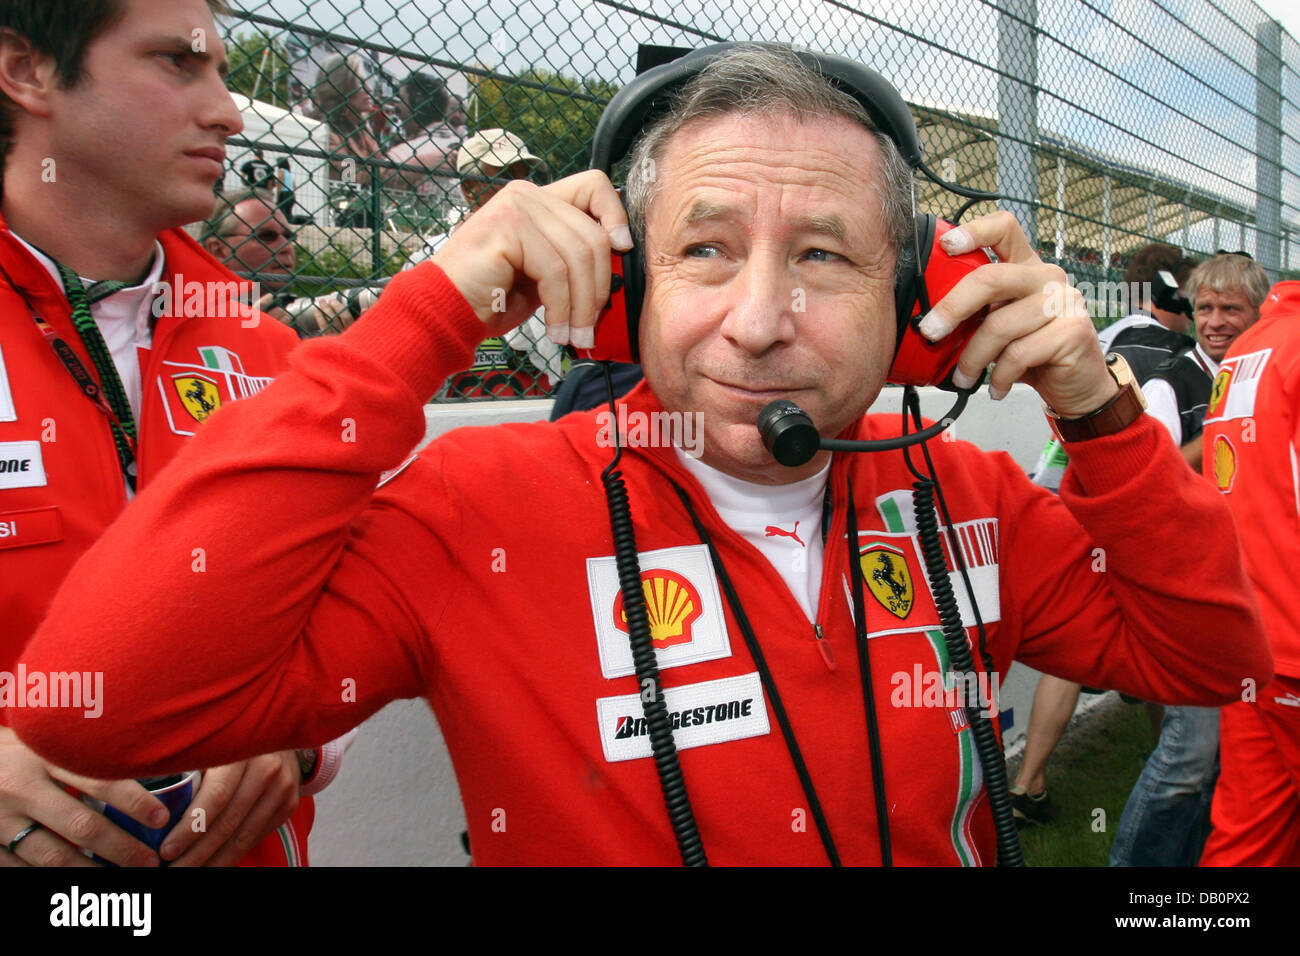 Il francese Jean Todt, amministratore delegato della Scuderia Ferrari, gesti prima dello start del Gran Premio del Belgio presso la pista di Spa Francorchamps, Belgio, 16 settembre 2007. Foto: Jens BUETTNER Foto Stock